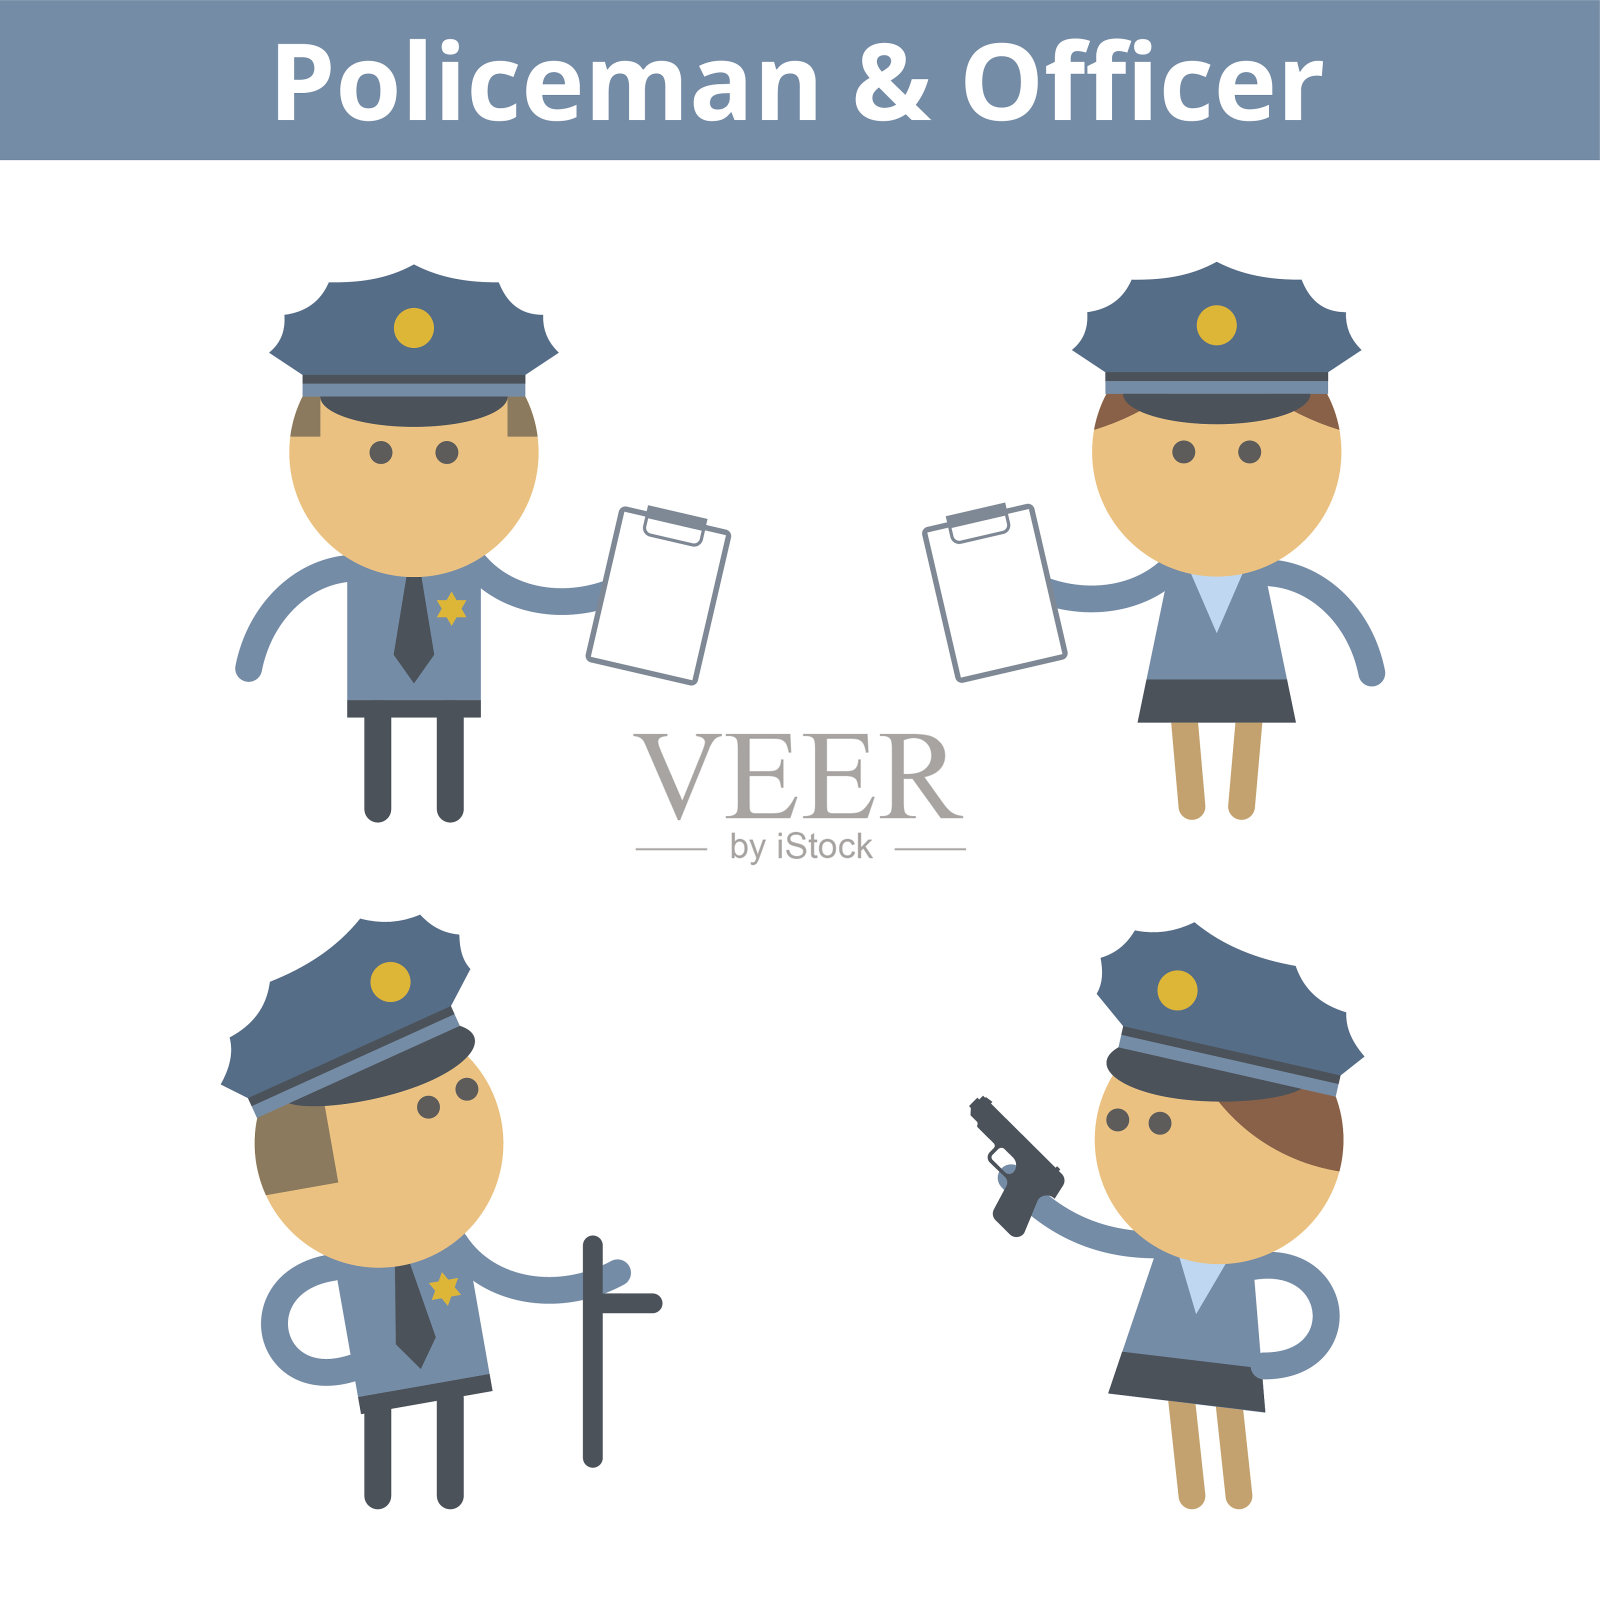 职业卡通人物:警察和警官。矢量平面图标。设计元素图片